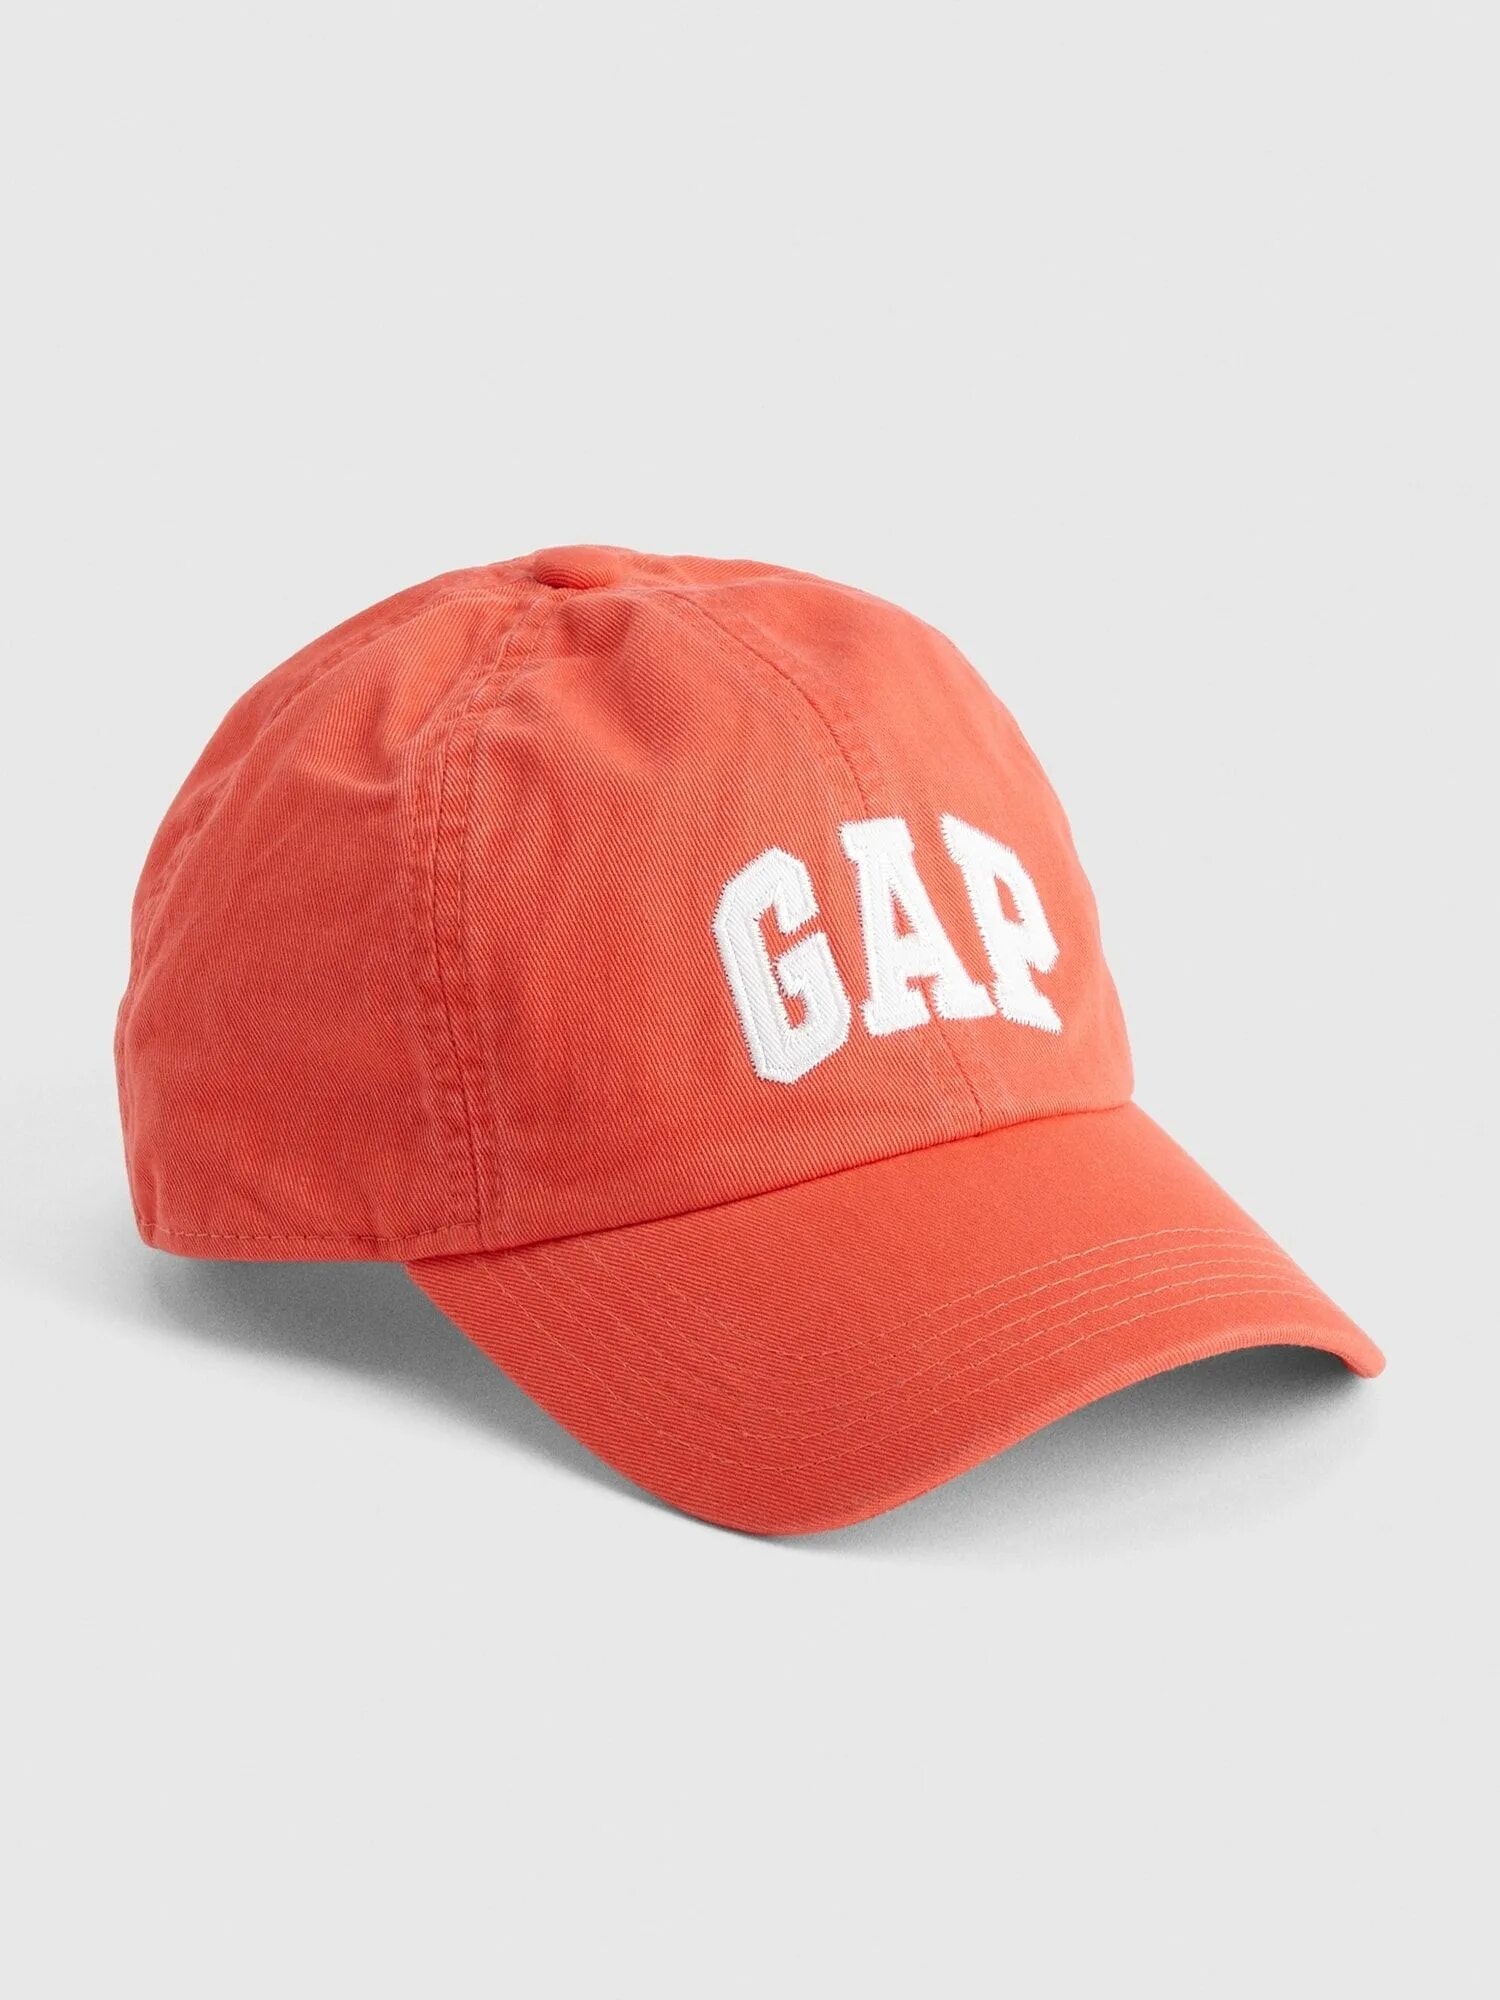 Gap cap